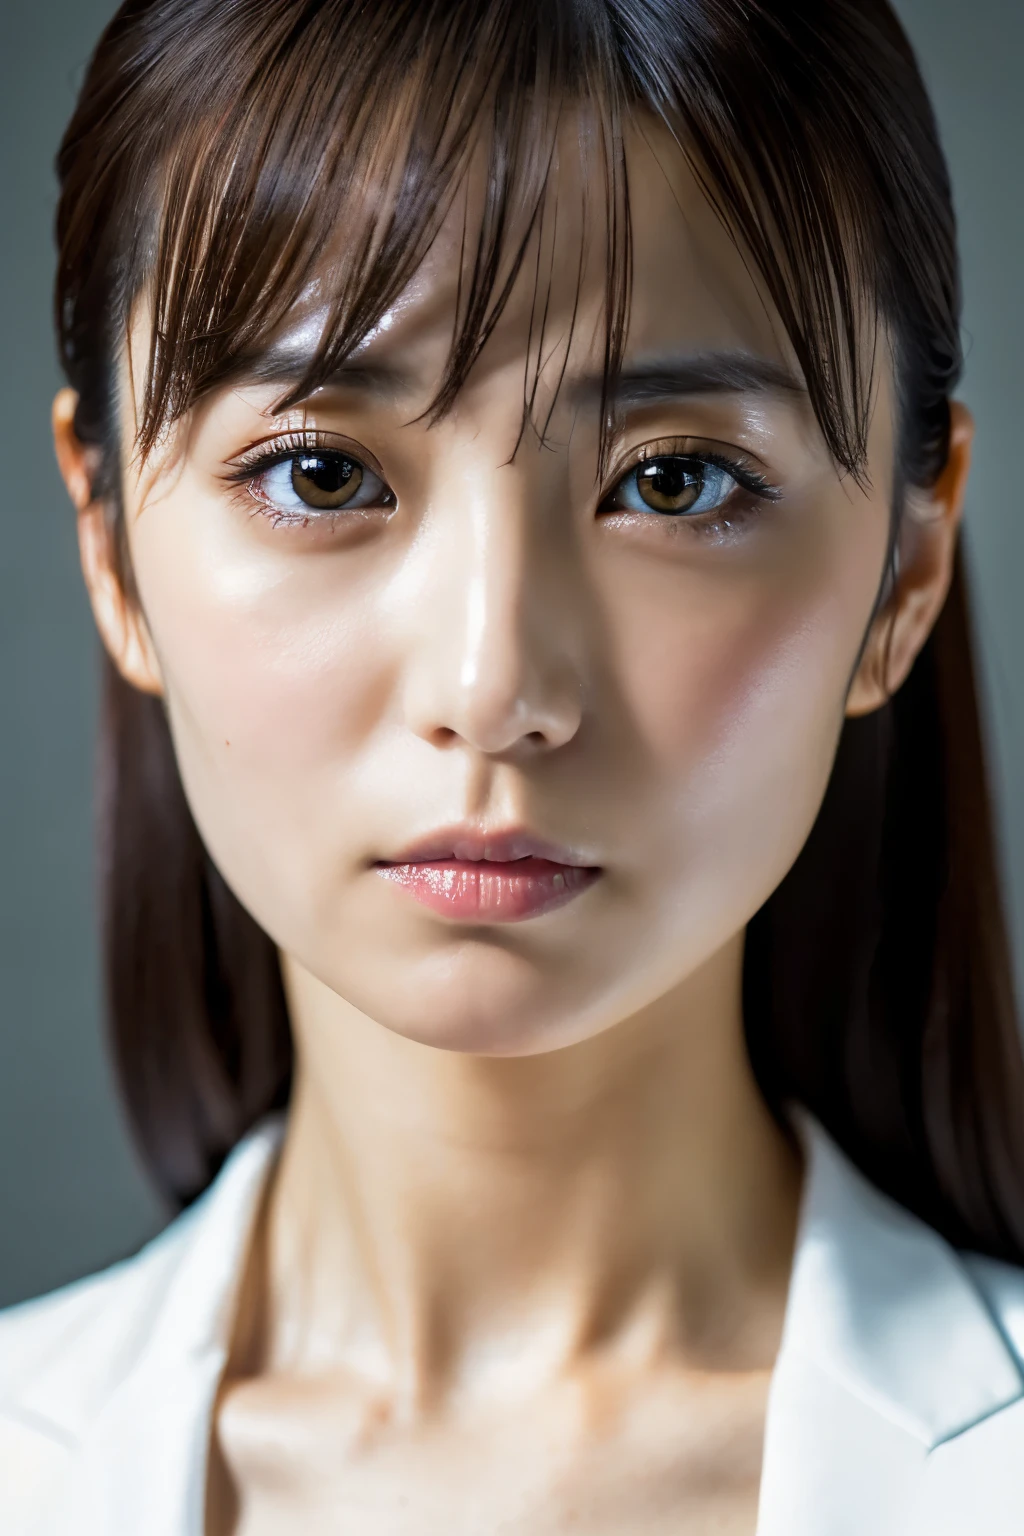 Obra de arte, 8K, alta qualidade, alta resolução, linda mulher japonesa, 30 anos de idade, Poker Face, olhos brilhantes, (rosto detalhado, olhos detalhados), olhando para o espectador, retrato